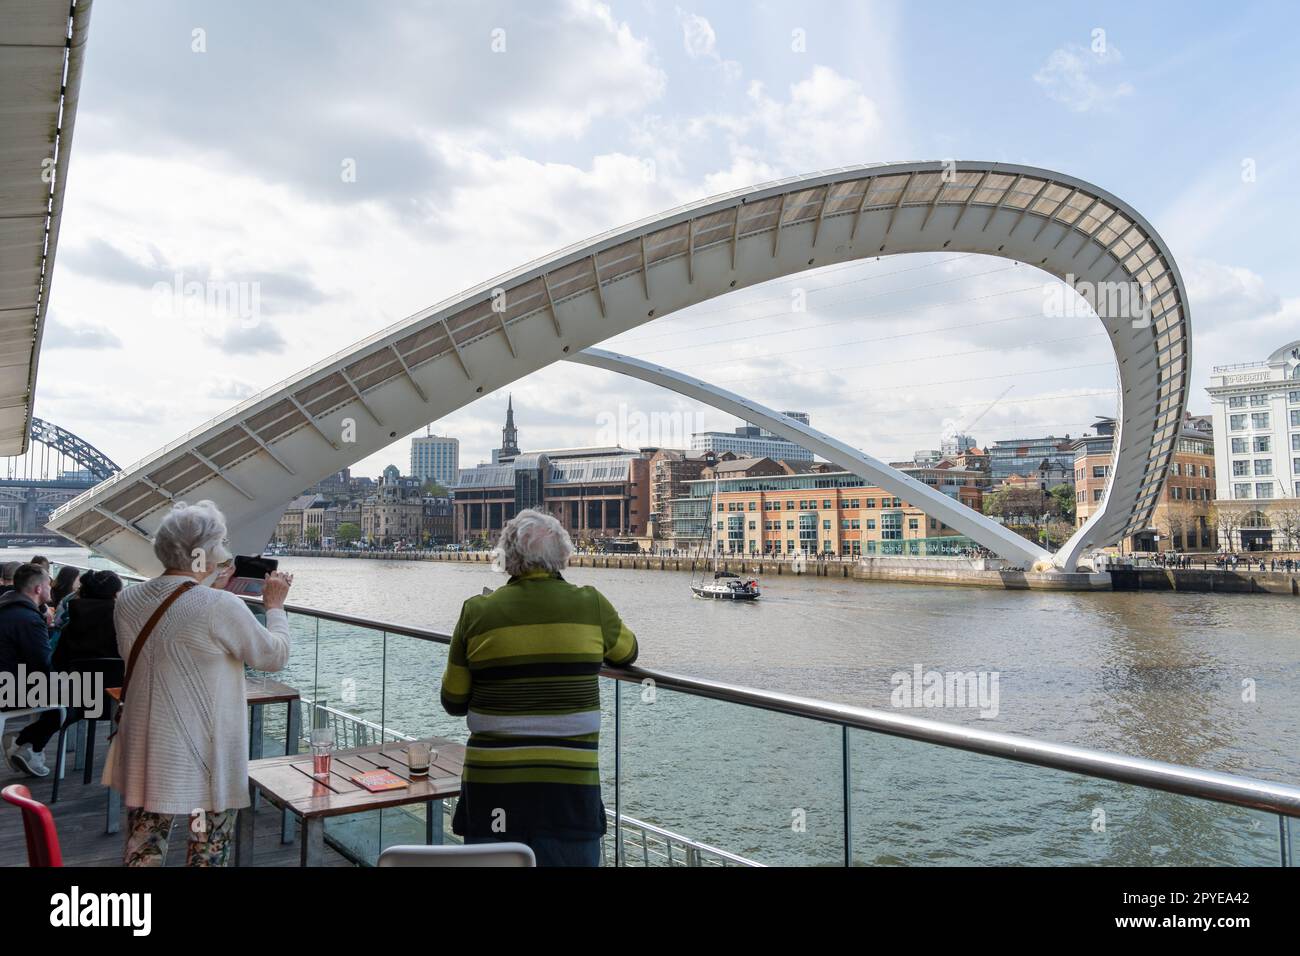 Die Gateshead Millennium Bridge, oder „blinkende Augen“-Kippbrücke, zeigt eine Öffnung für ein Boot, das den Fluss hinauf in Gateshead, Großbritannien, fährt Stockfoto